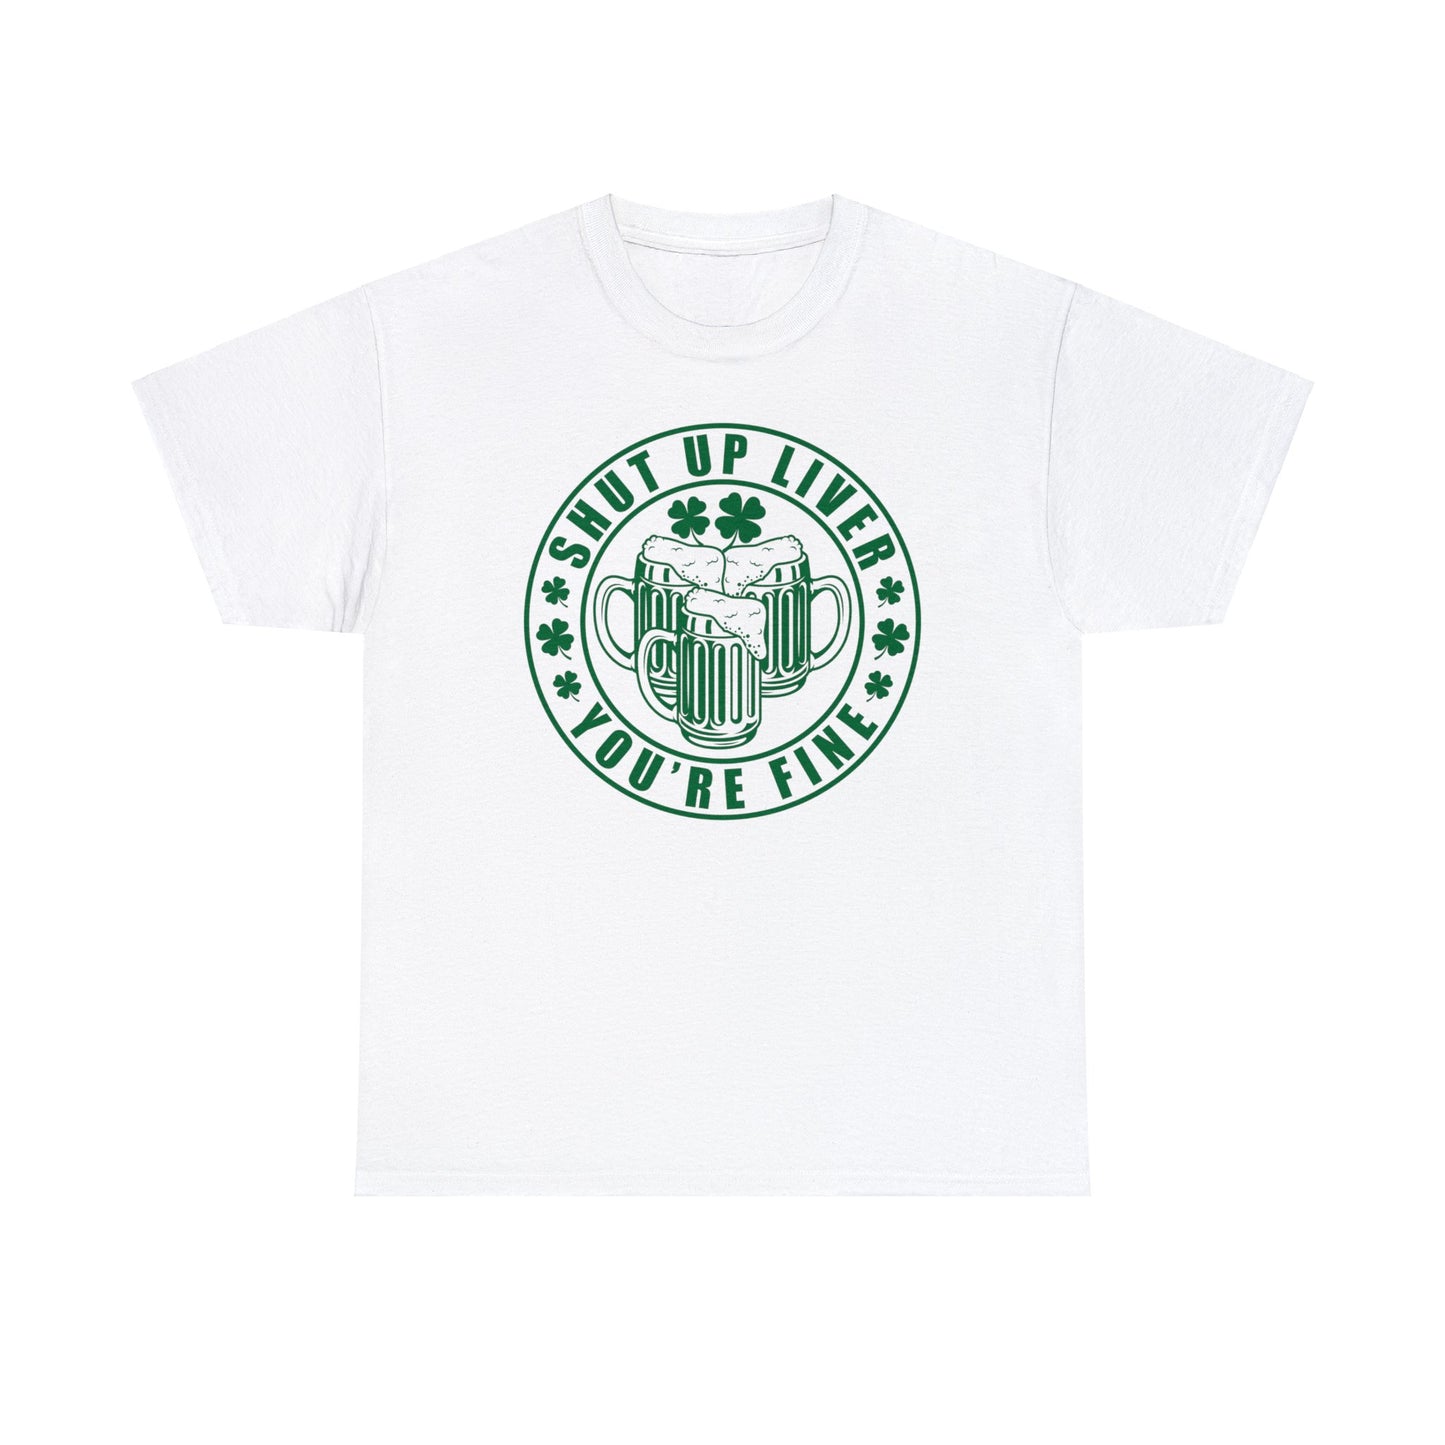 Shut Up Liver T-Shirt For St. Patricks Day T Shirt For St Paddys Day TShirt